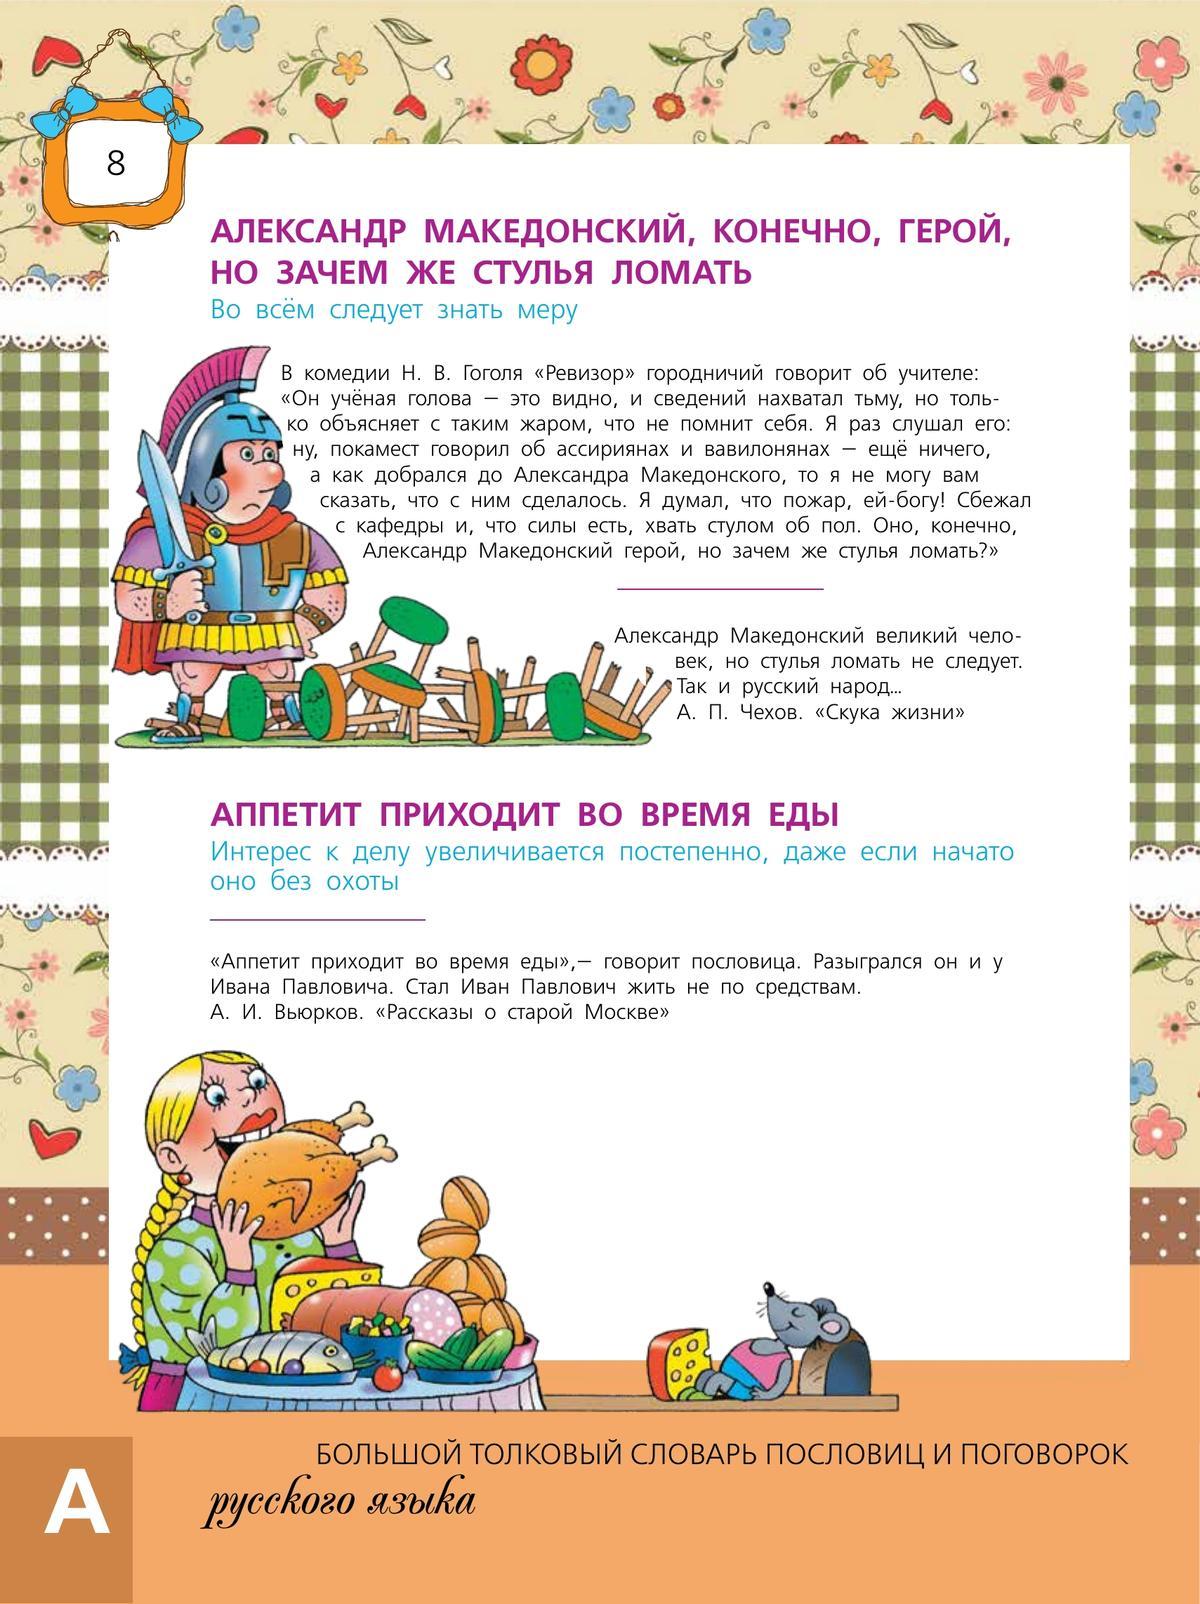 Большой толковый словарь пословиц и поговорок русского языка для детей 9